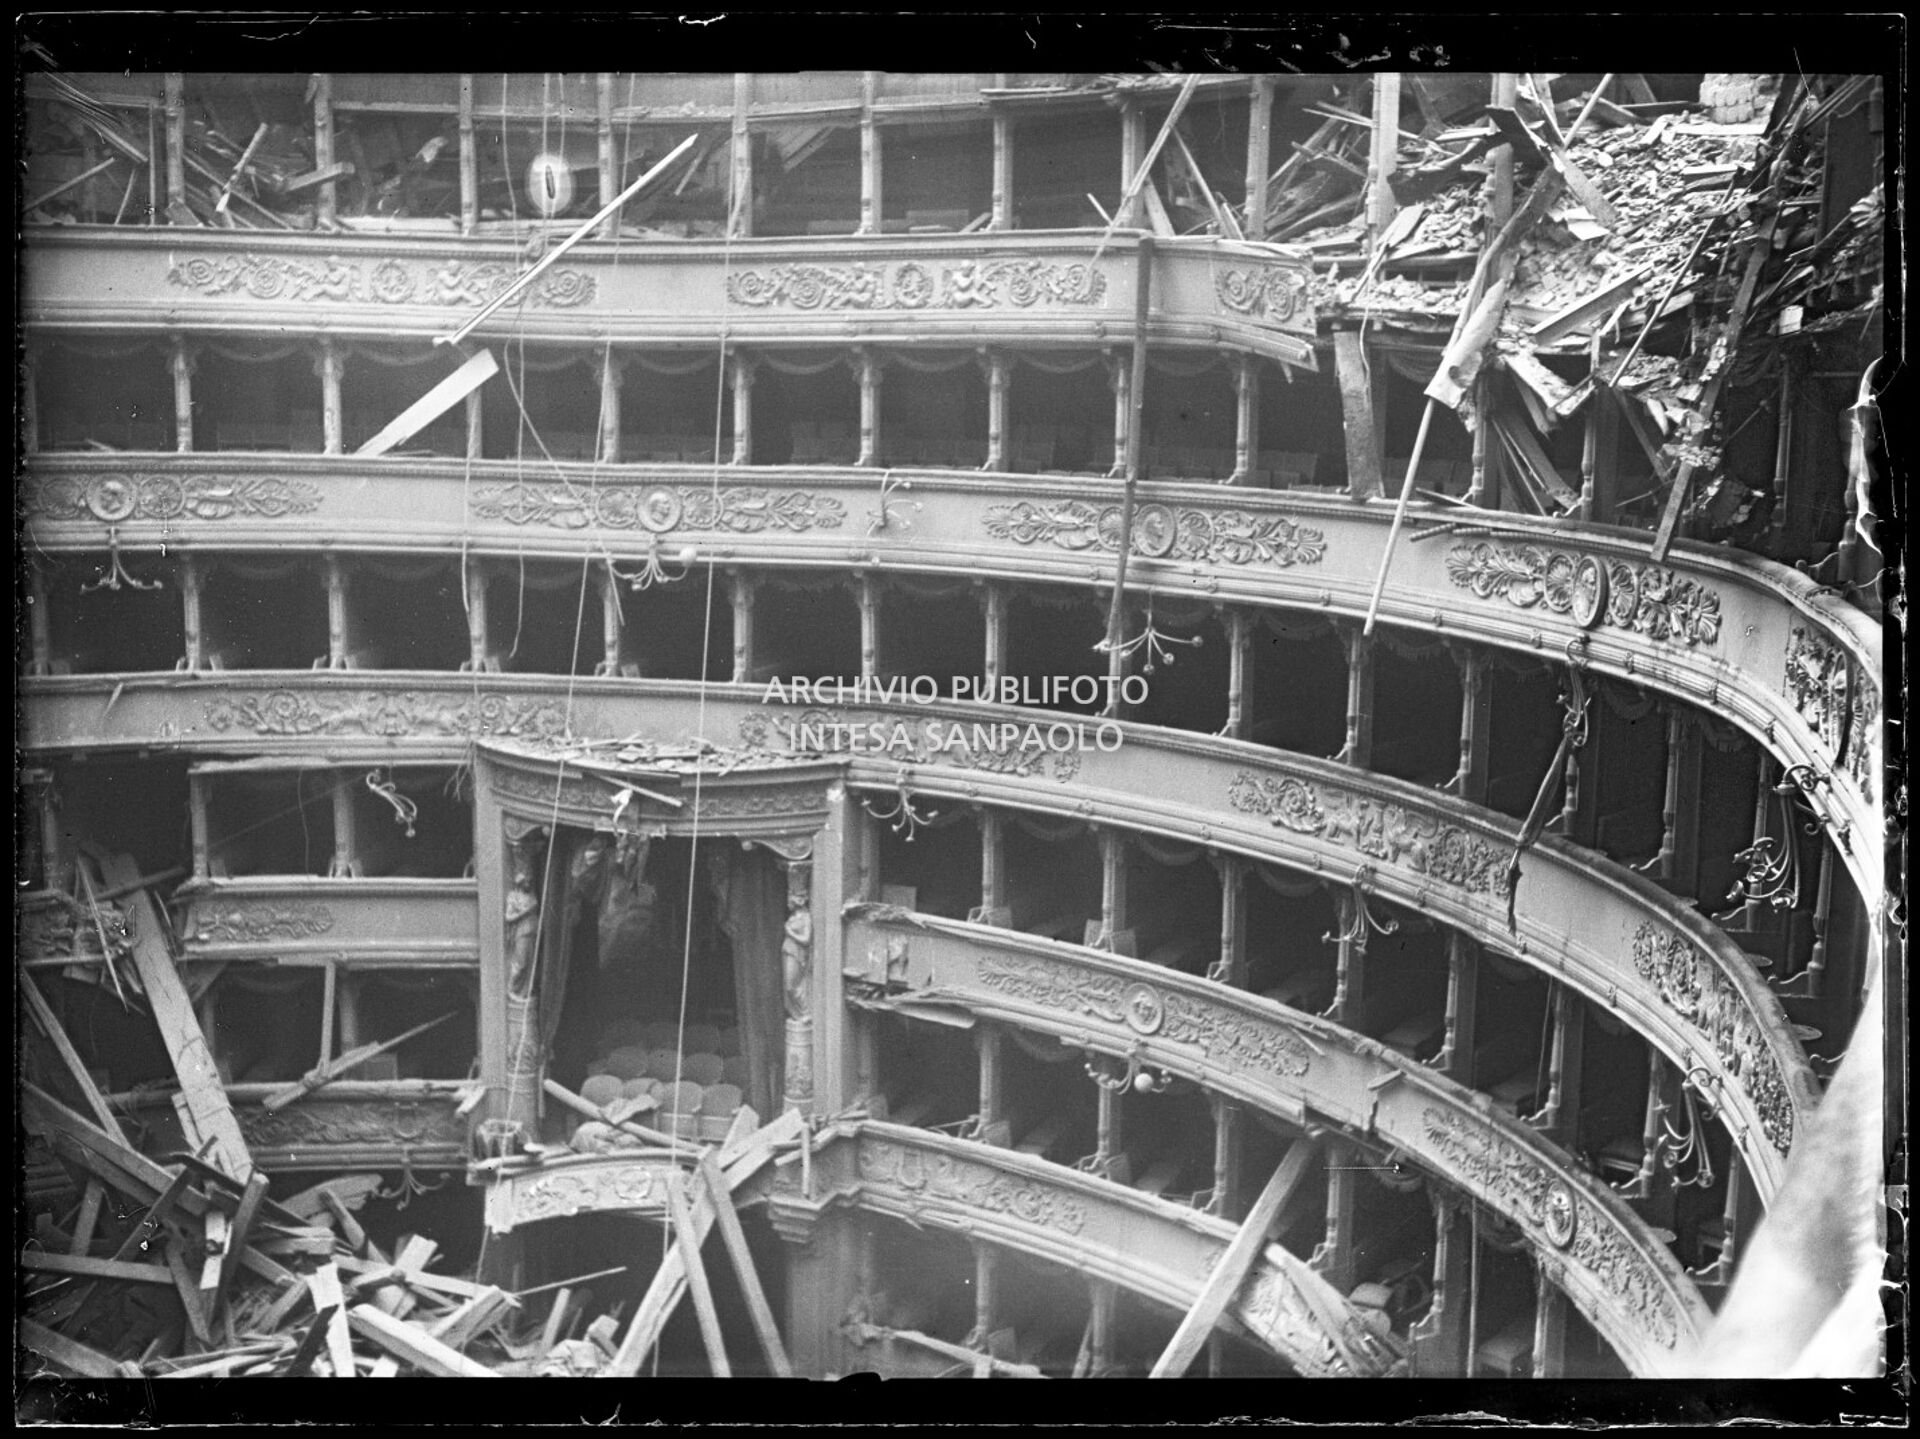 Palchi del Teatro alla Scala di Milano, tra cui il palco reale, gravemente danneggiati dopo i bombardamenti che hanno causato il crollo del tetto e della volta centinata sottostante distruggendo in parte il quinto e sesto ordine di gallerie e danneggiando il proscenio e la platea.